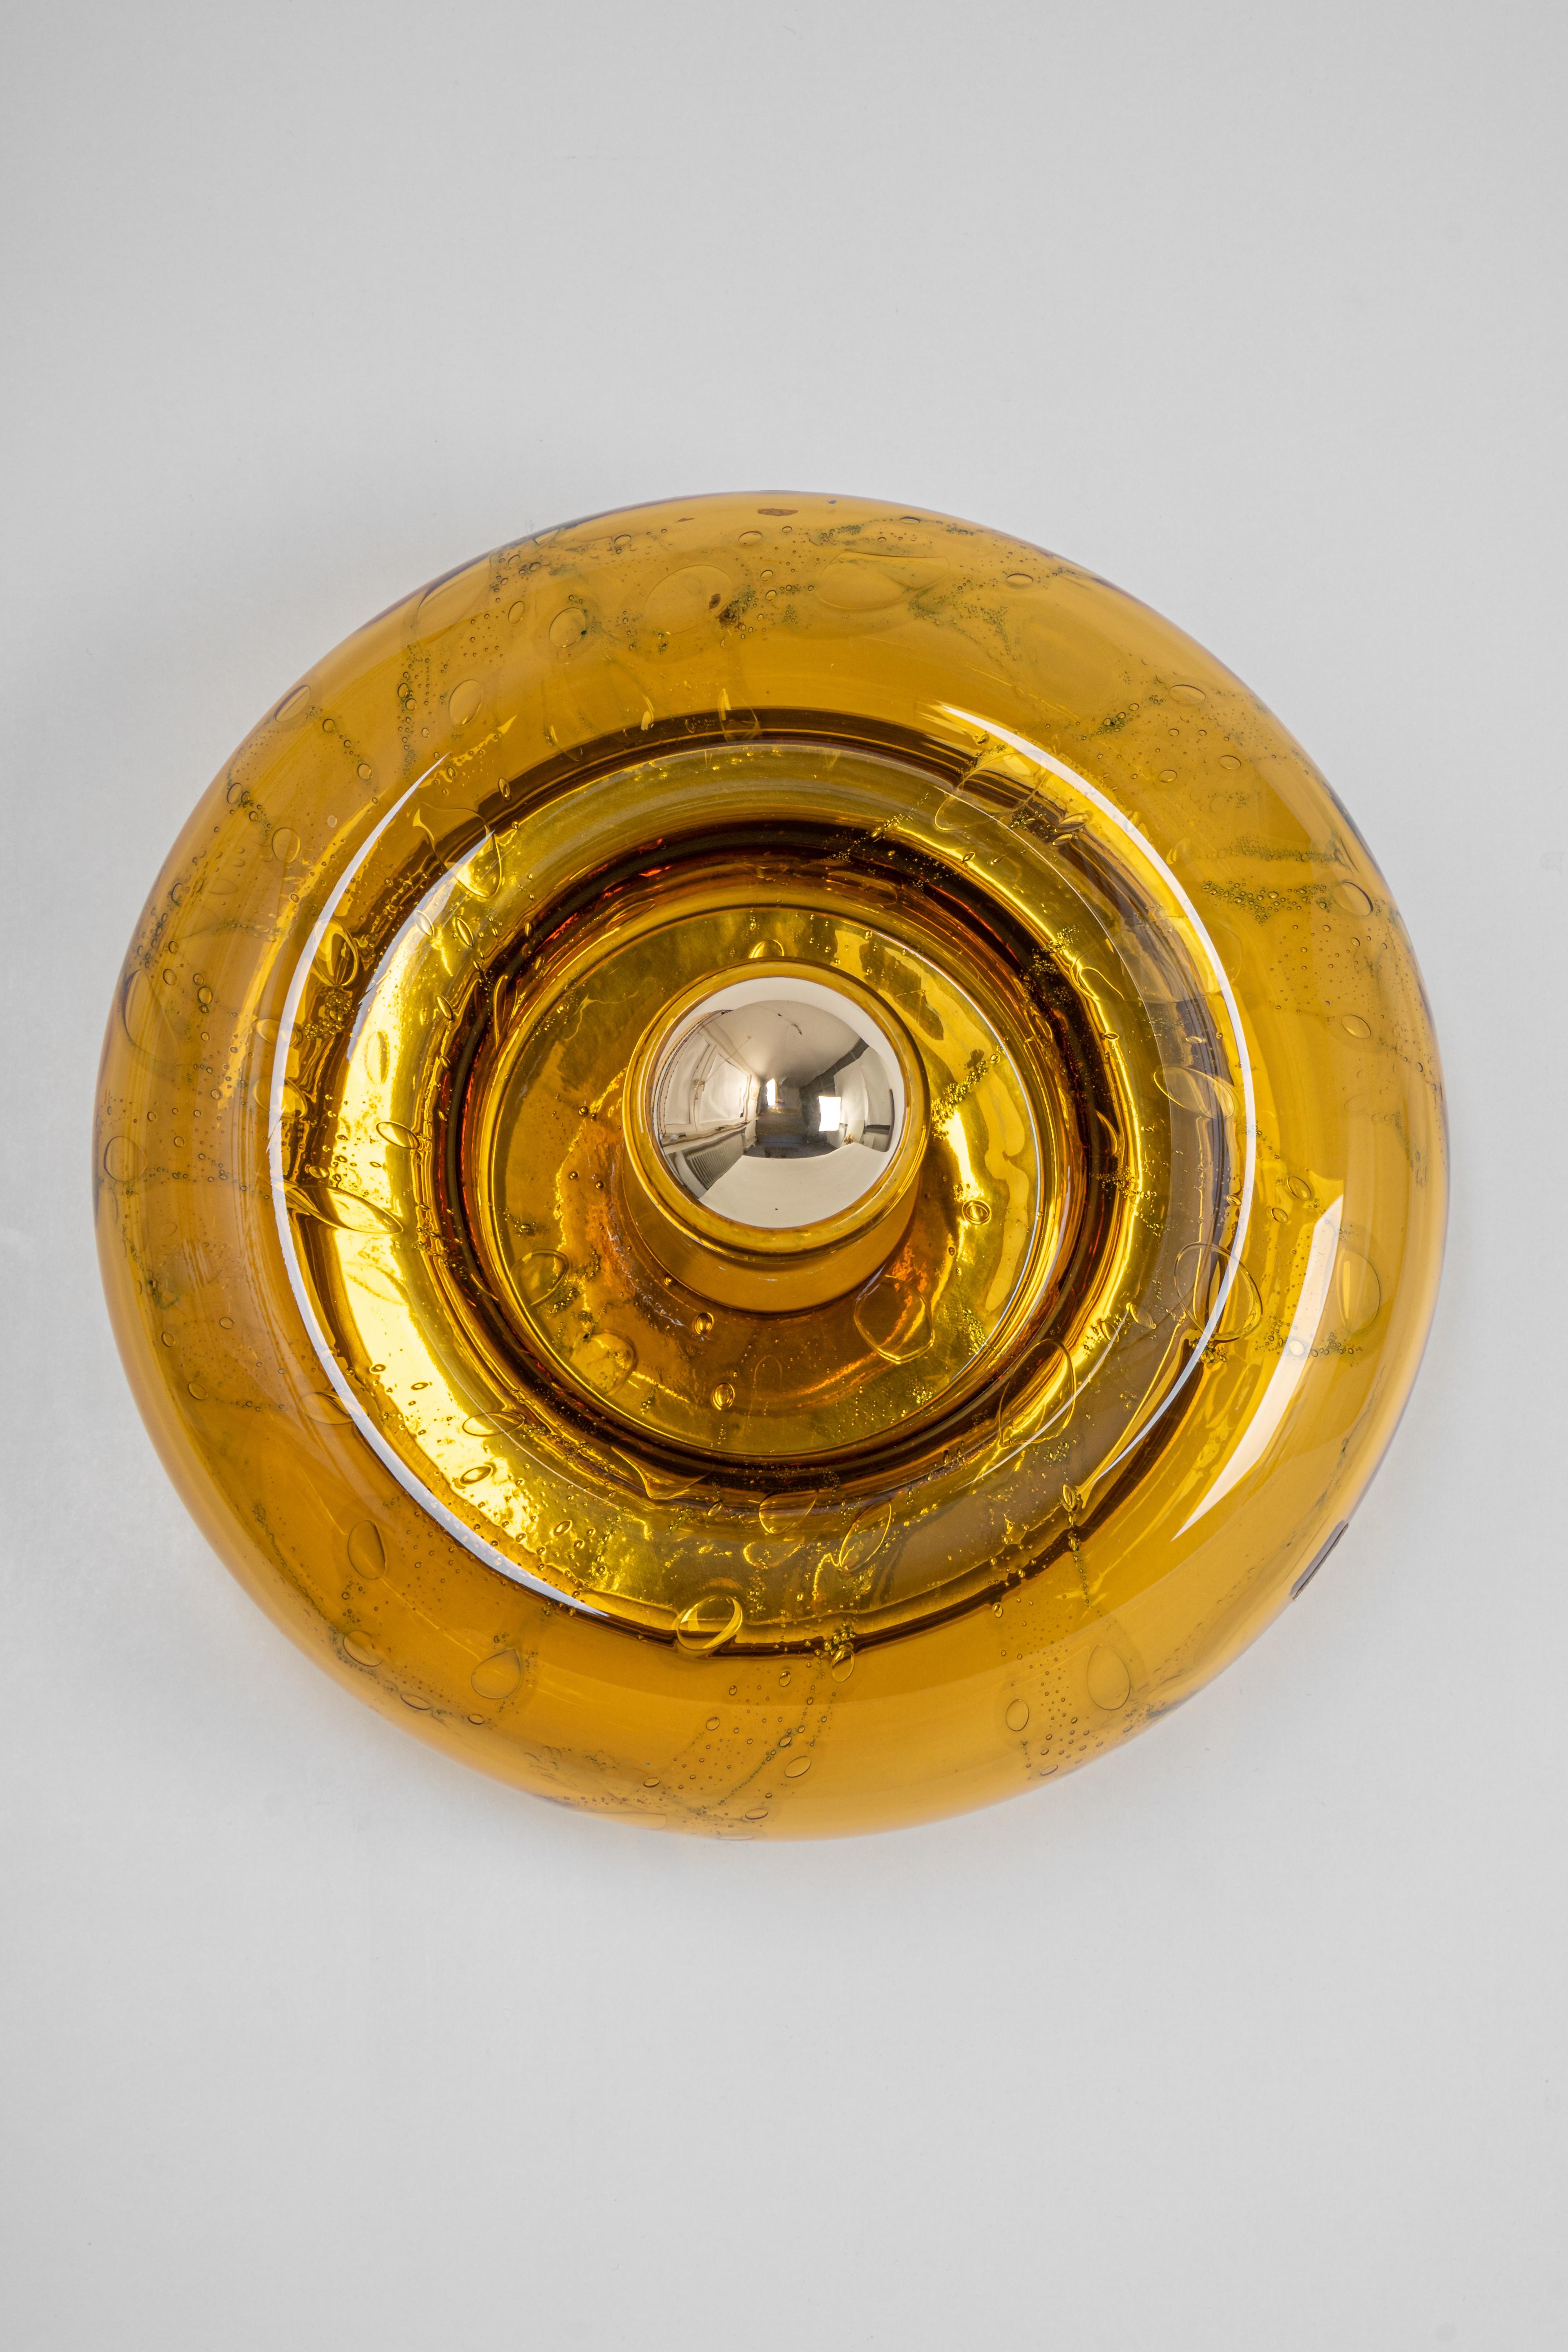 1 von 6 speziellen runden biomorphen geräucherten Muranoglas-Wandleuchten in Doughnut-Form, entworfen von Doria Leuchten, Deutschland, hergestellt ca. 1960-1969.
Hohe Qualität, guter Zustand.
Sehr schöner Lichteffekt.
Gereinigt, gut verkabelt und